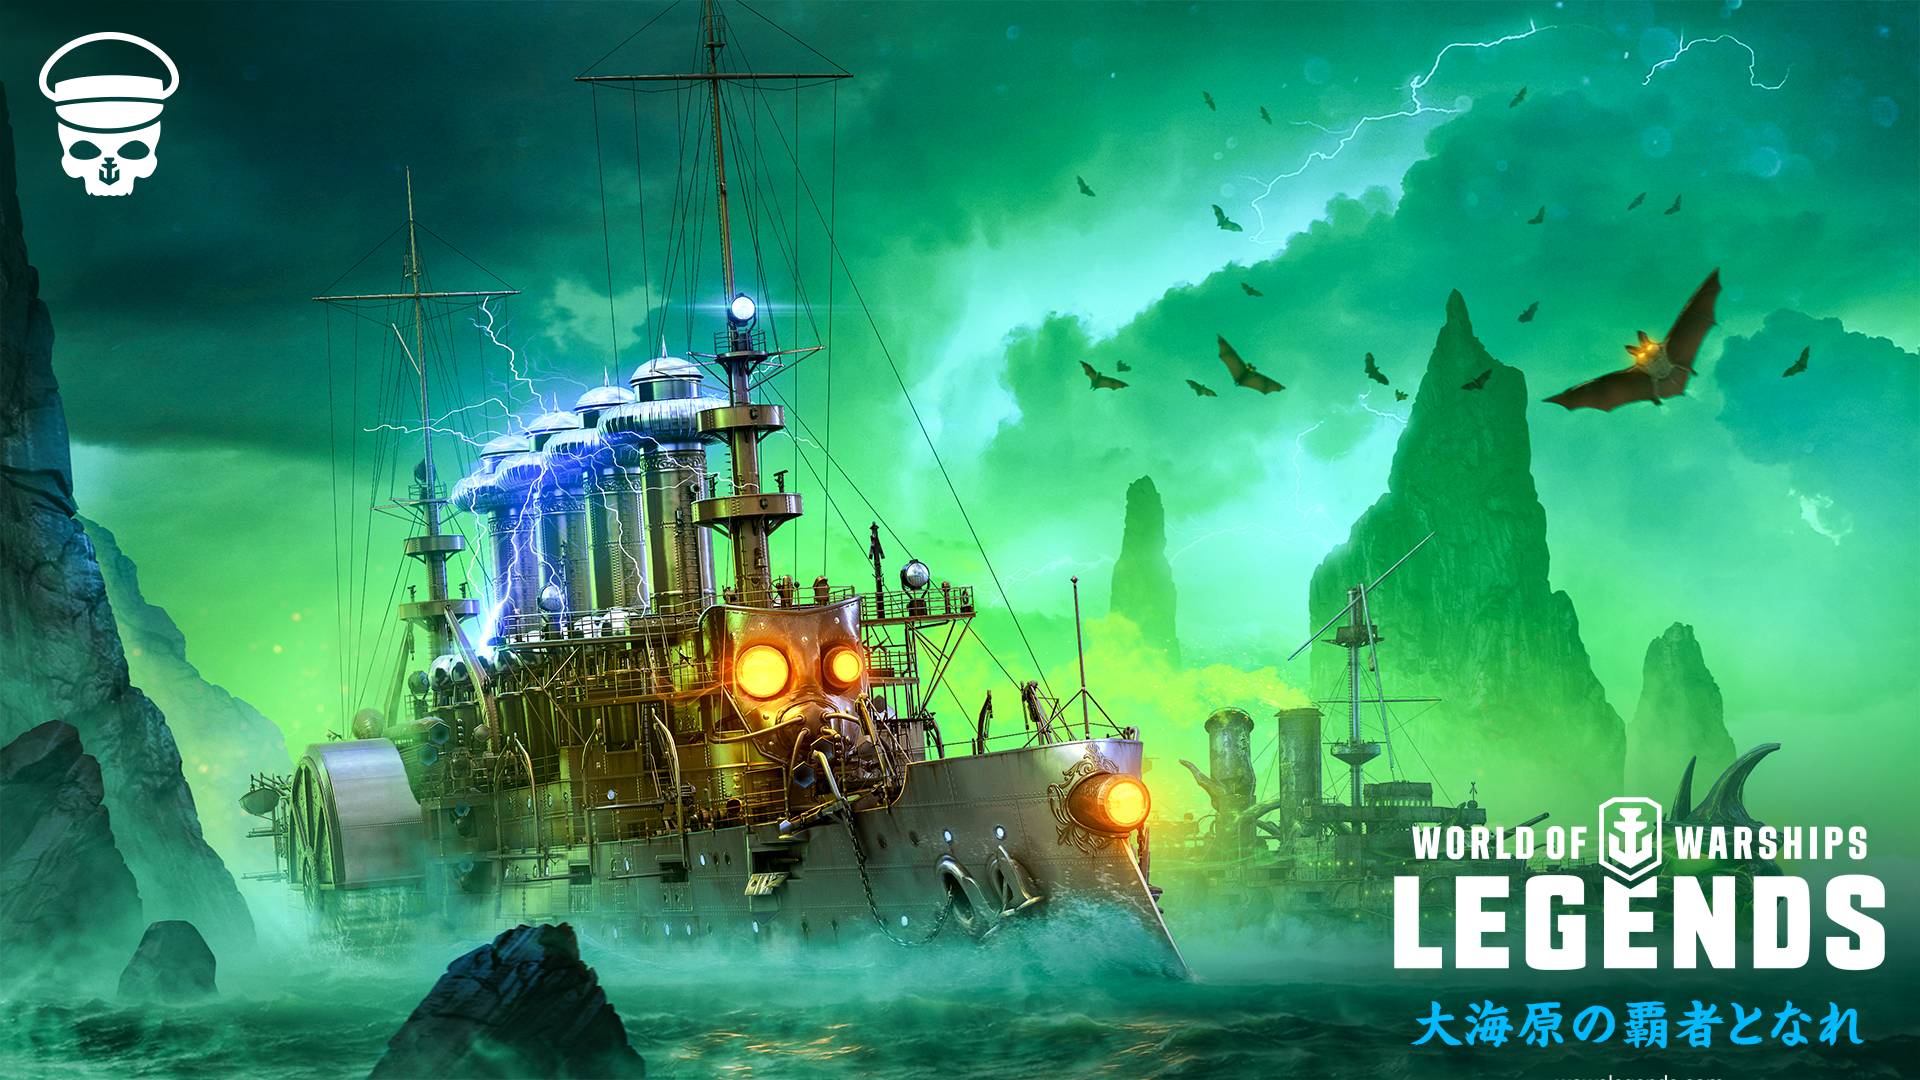 World Of Warships Legends ハロウィン連続ミッションキャンペーンを開催 掲載日 19年10月8日